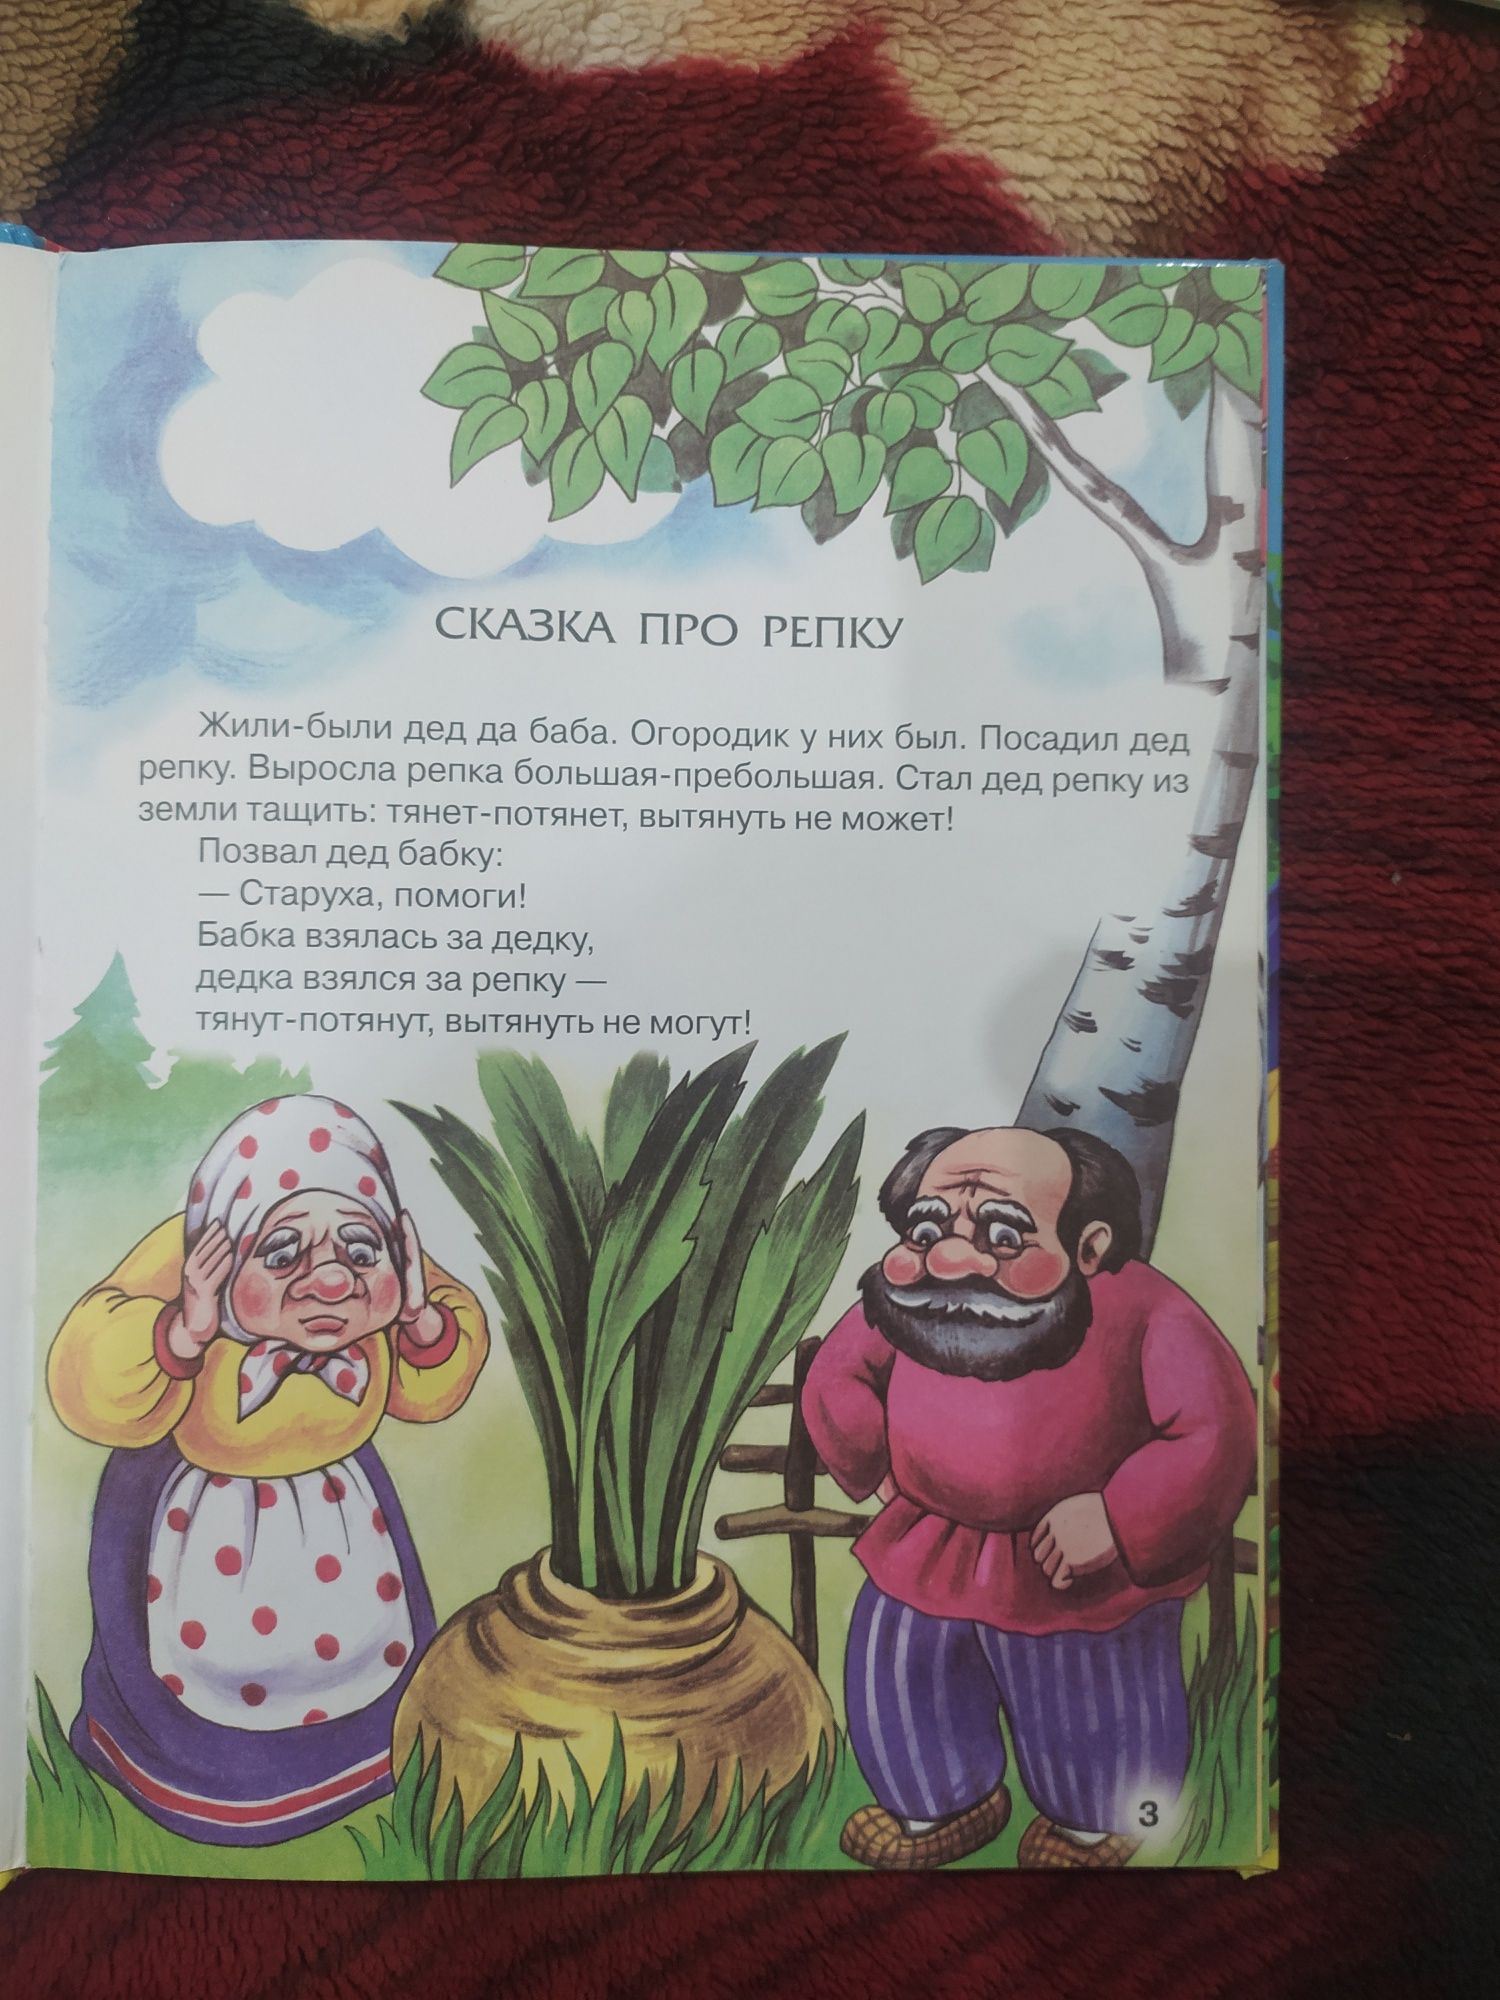 Продам детскую книгу сказок, бесплатная ОЛХ доставка УкрПочтой